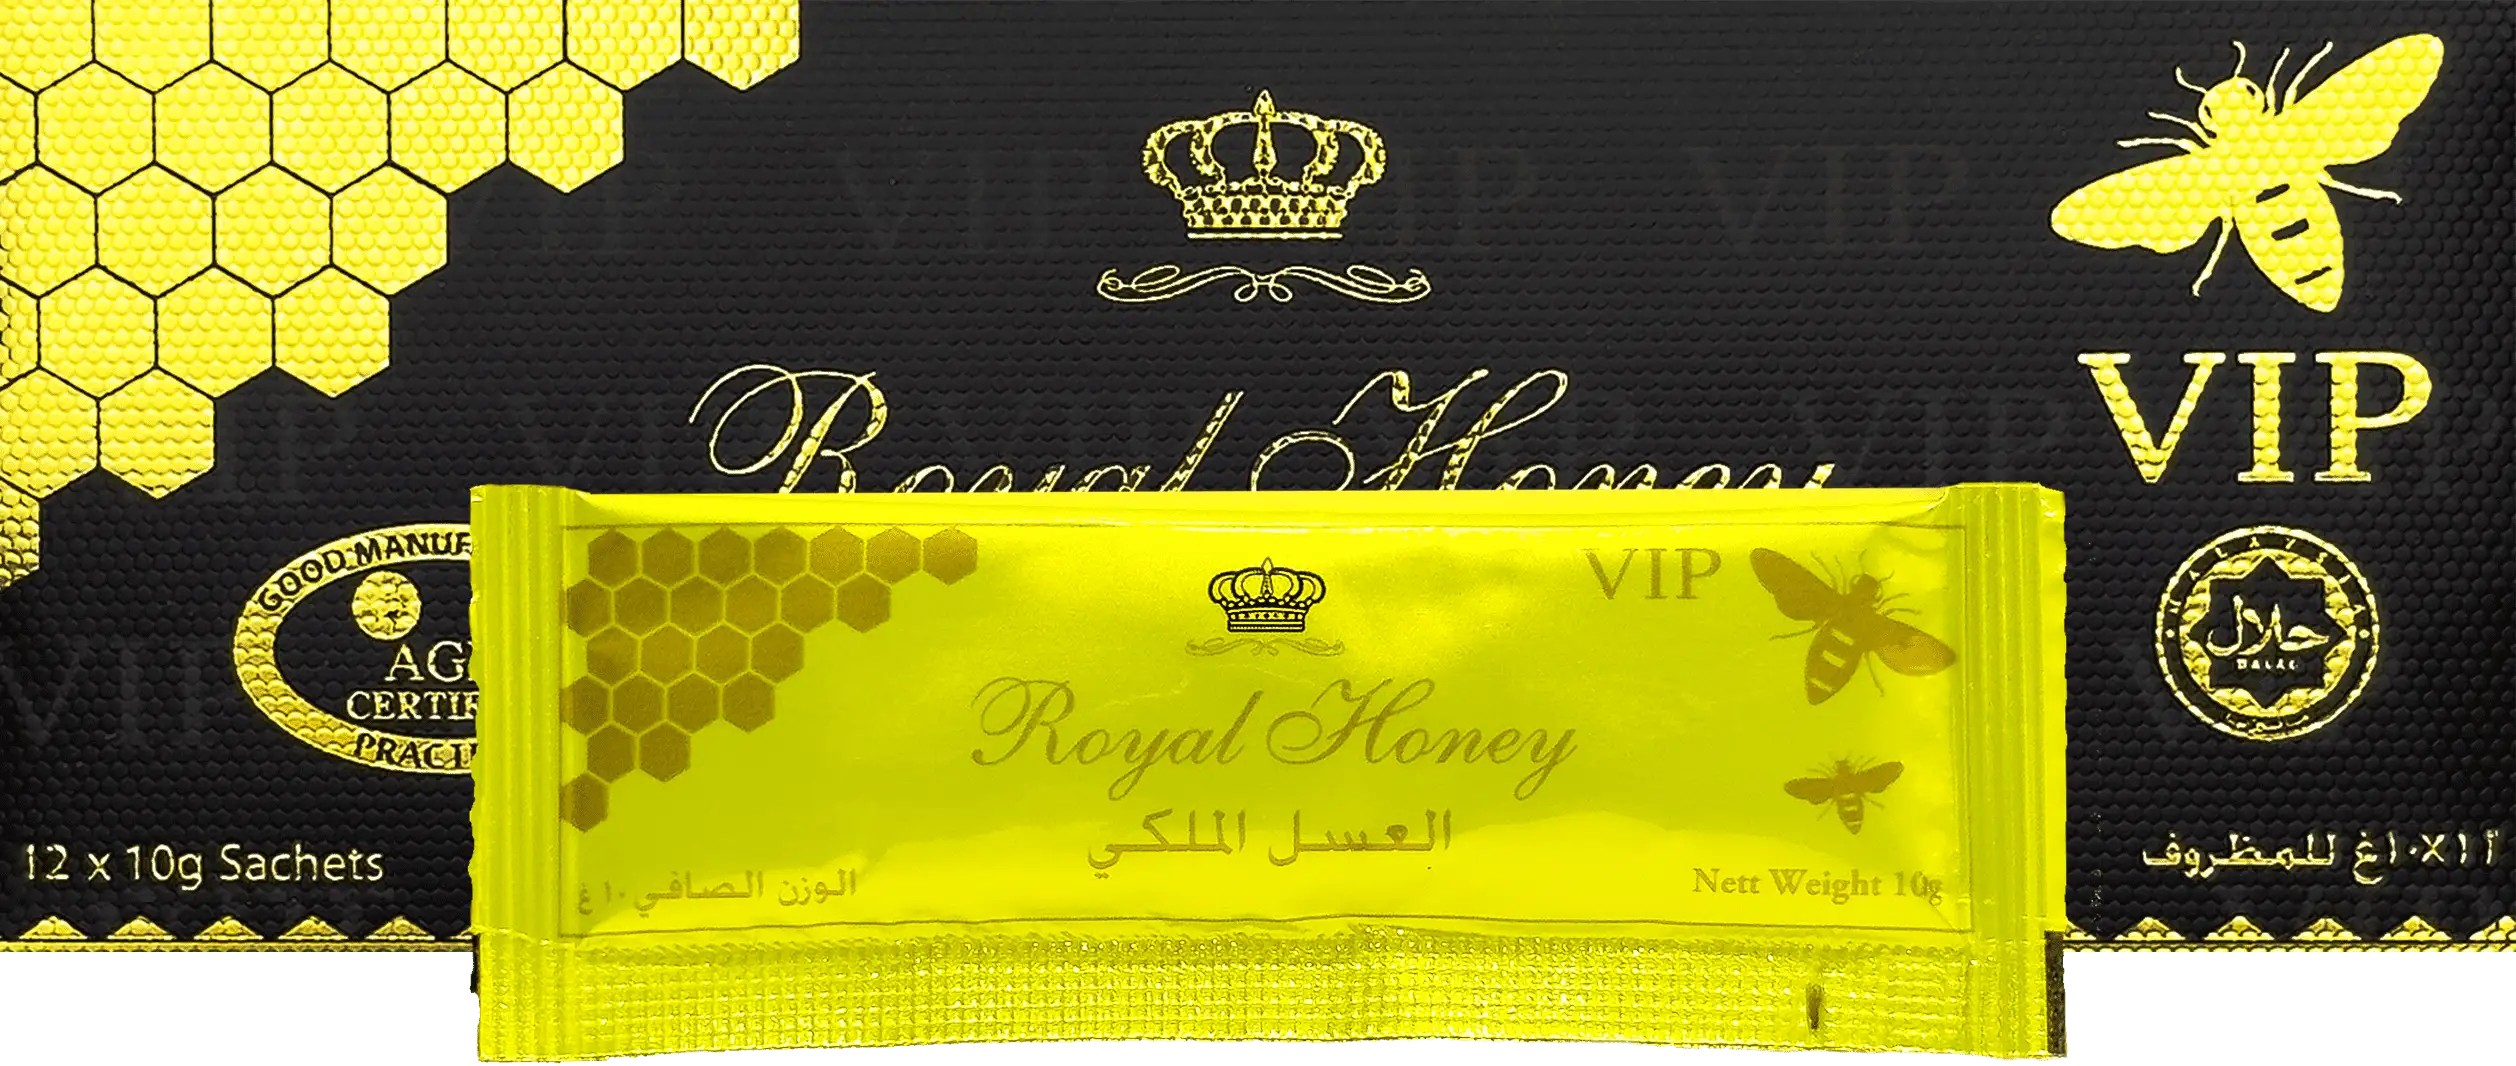 royalhoney product